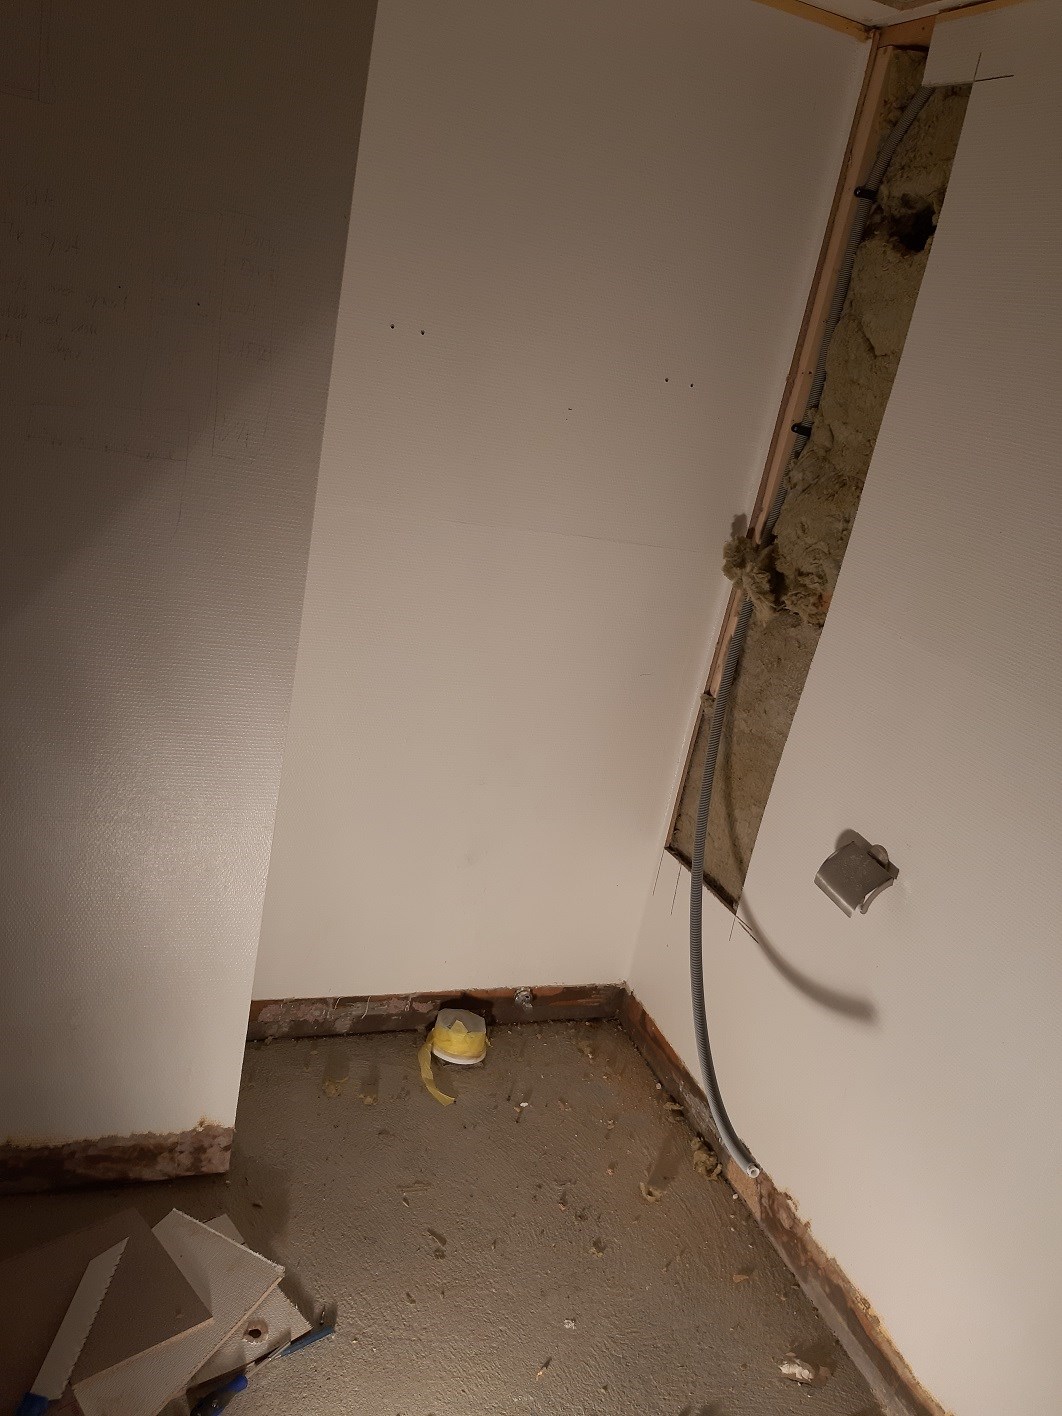 Varmekalel under "kasett" for vegghengt toalett, krise? - 20190402_125321.jpg - eehgil